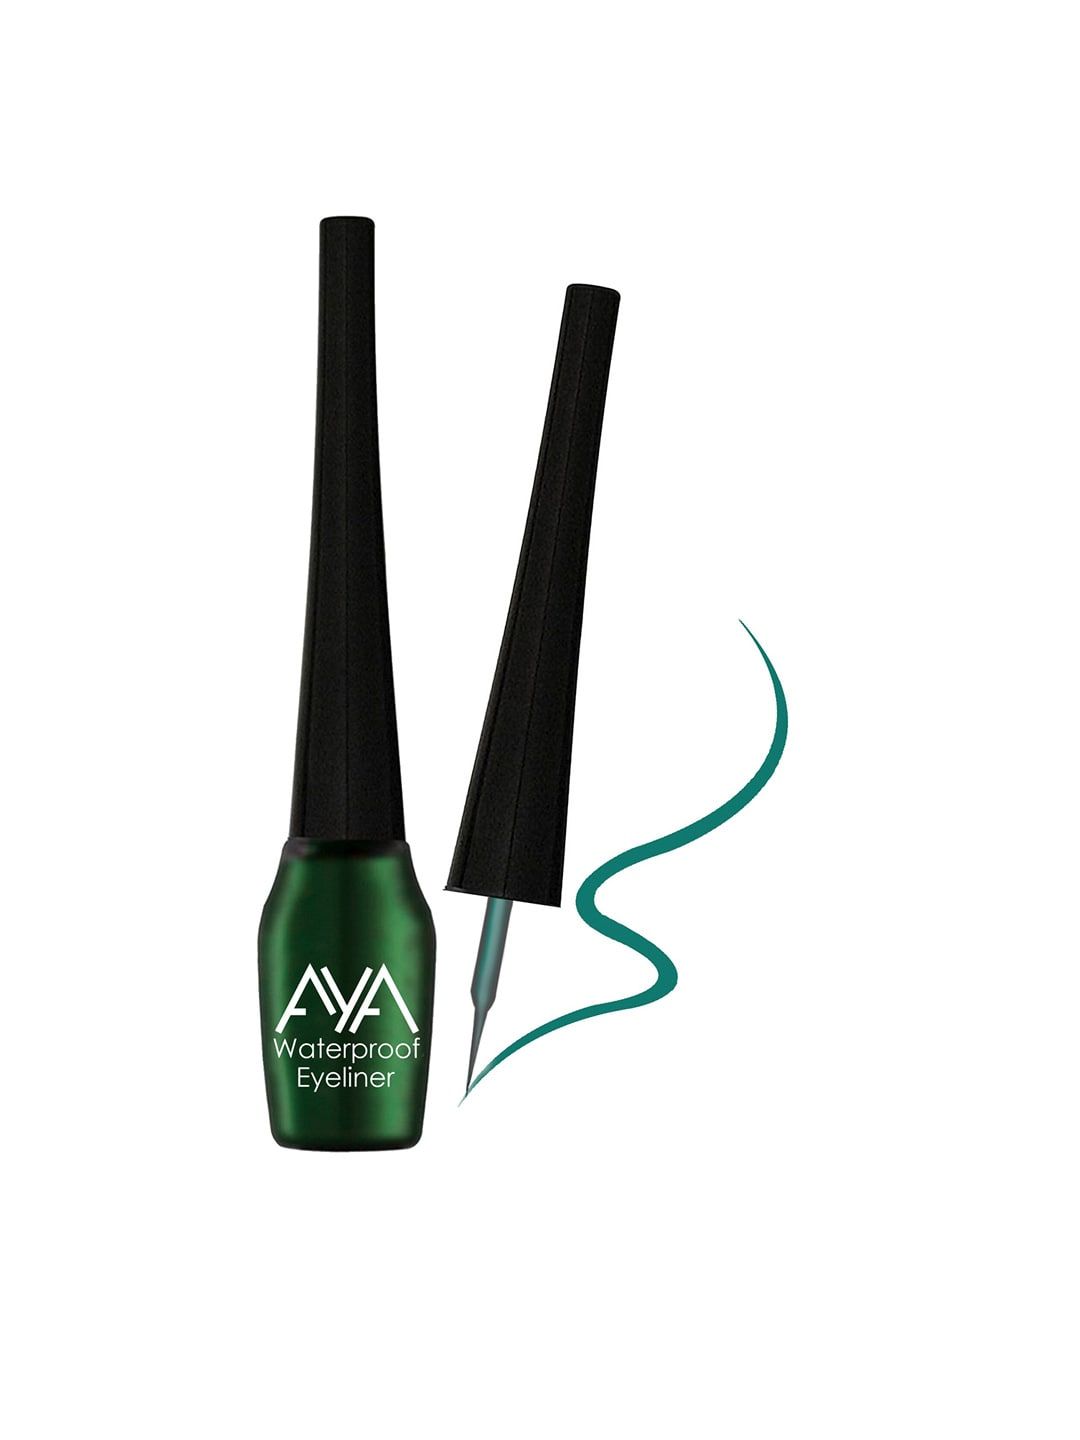 AYA Waterproof Eyeliner Green - 5 ml Price in India